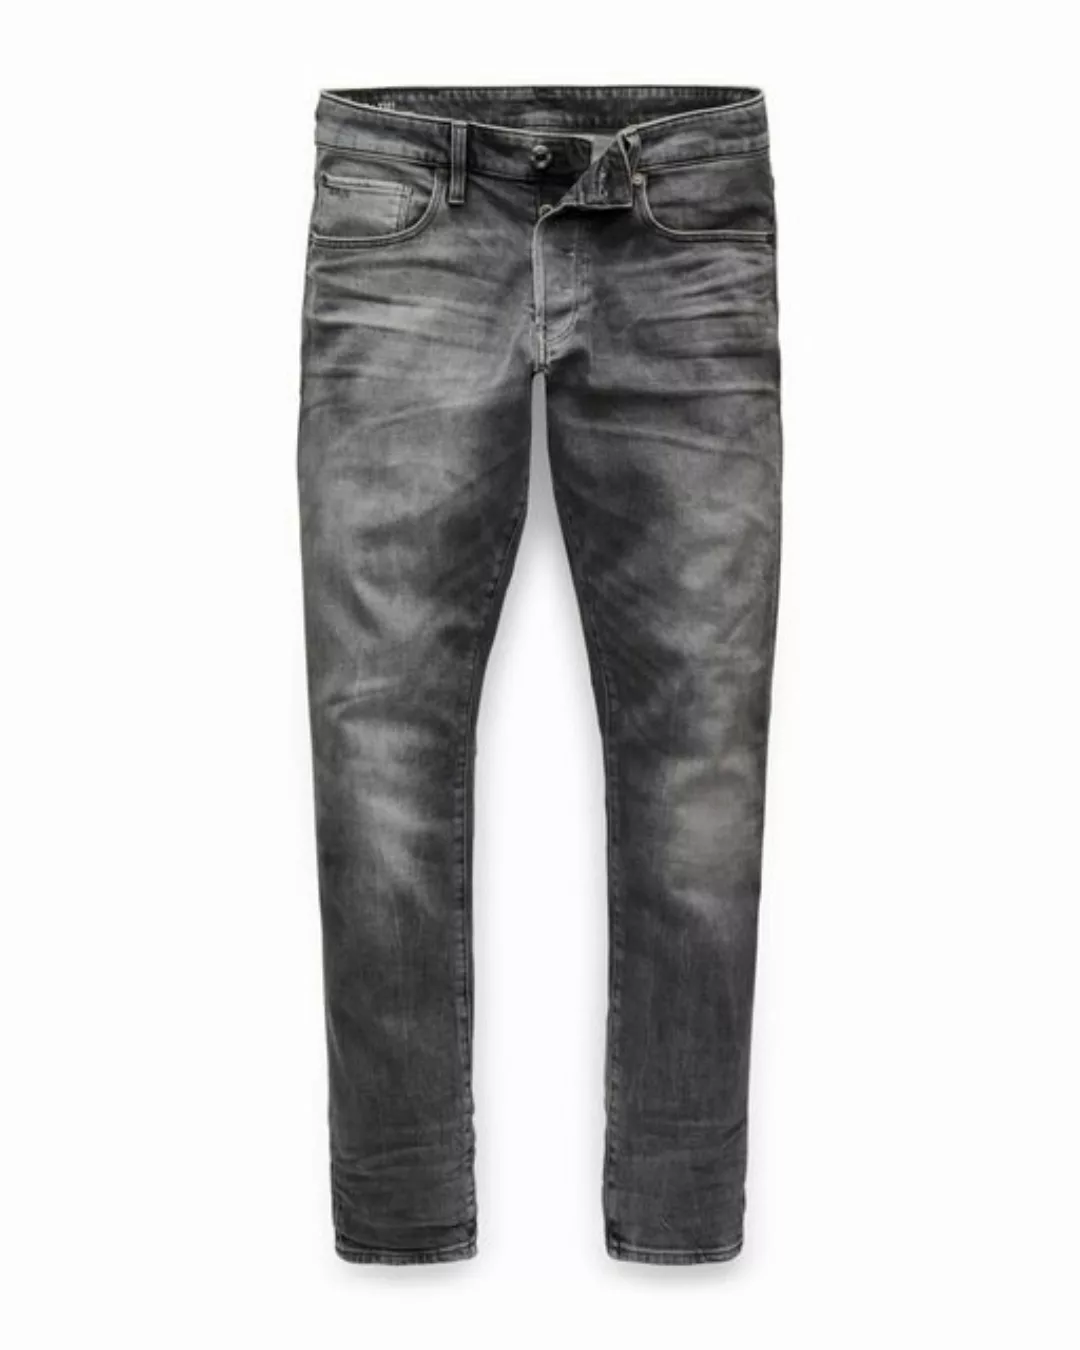 G-star 3301 Straight Tapered Jeans 28 Light Indigo Aged günstig online kaufen